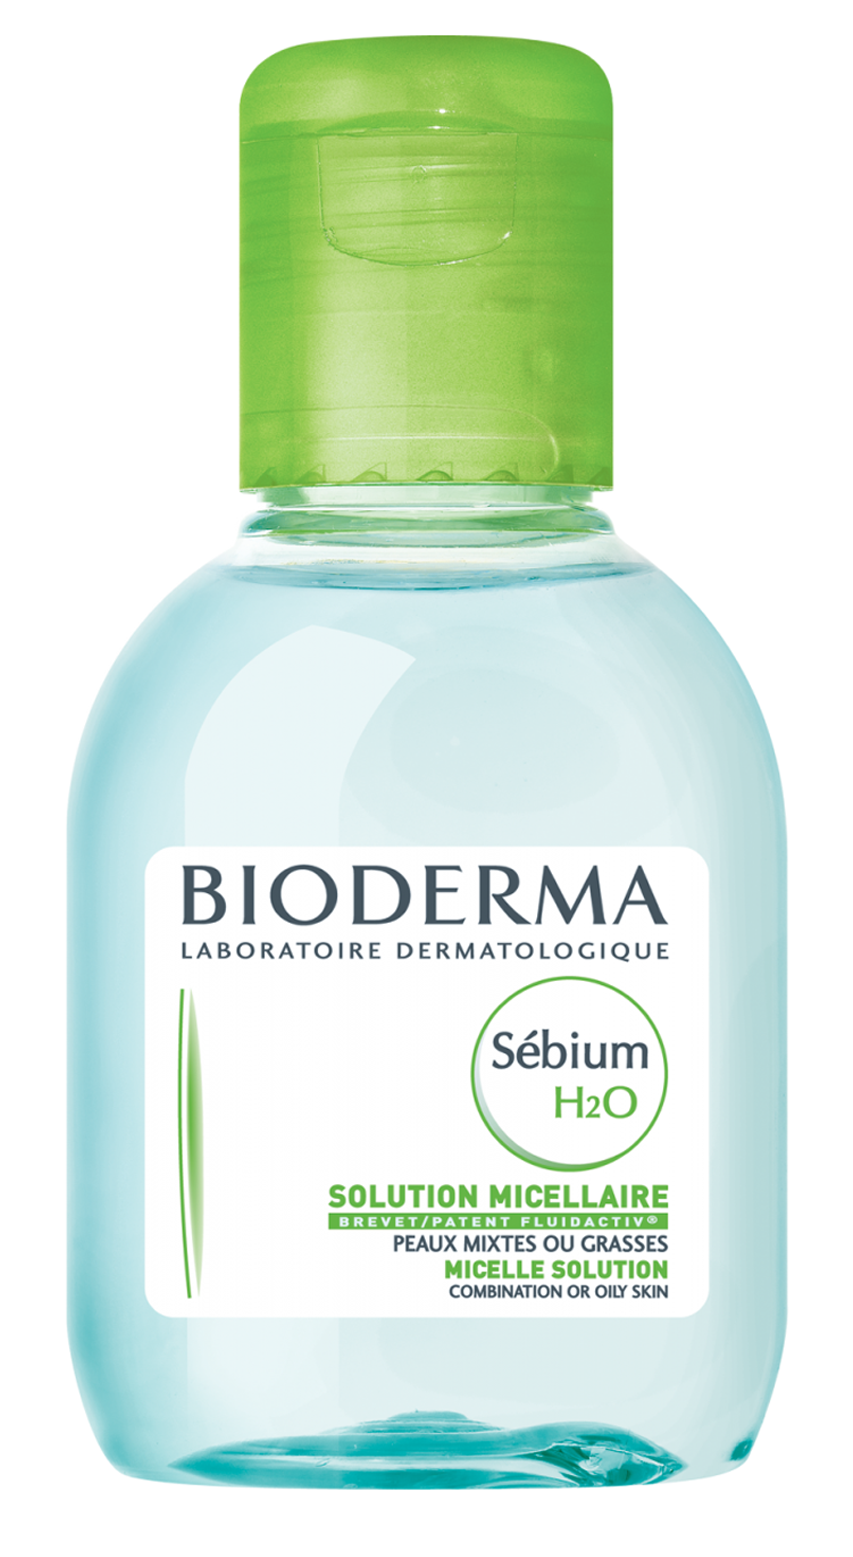 Bioderma Sebium H2O Вода Очищающая 100 мл, Bioderma [Биодерма]  - купить